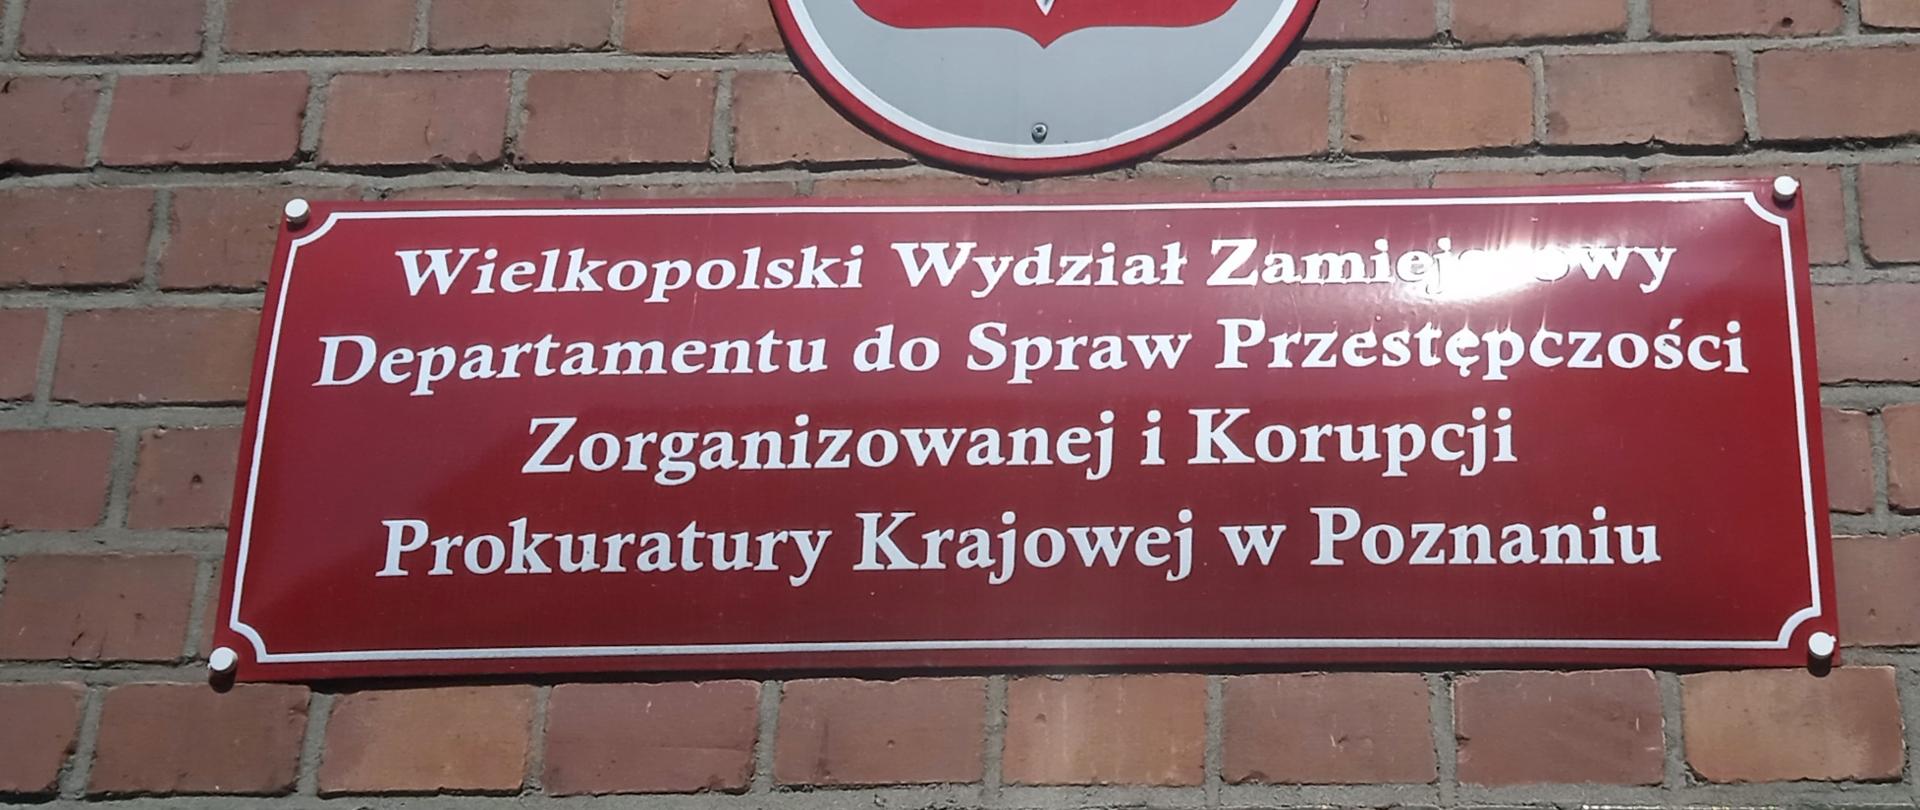 Uderzenie Wielkopolskiego pionu PZ PK w grupę przestępczą przemycającą imigrantów